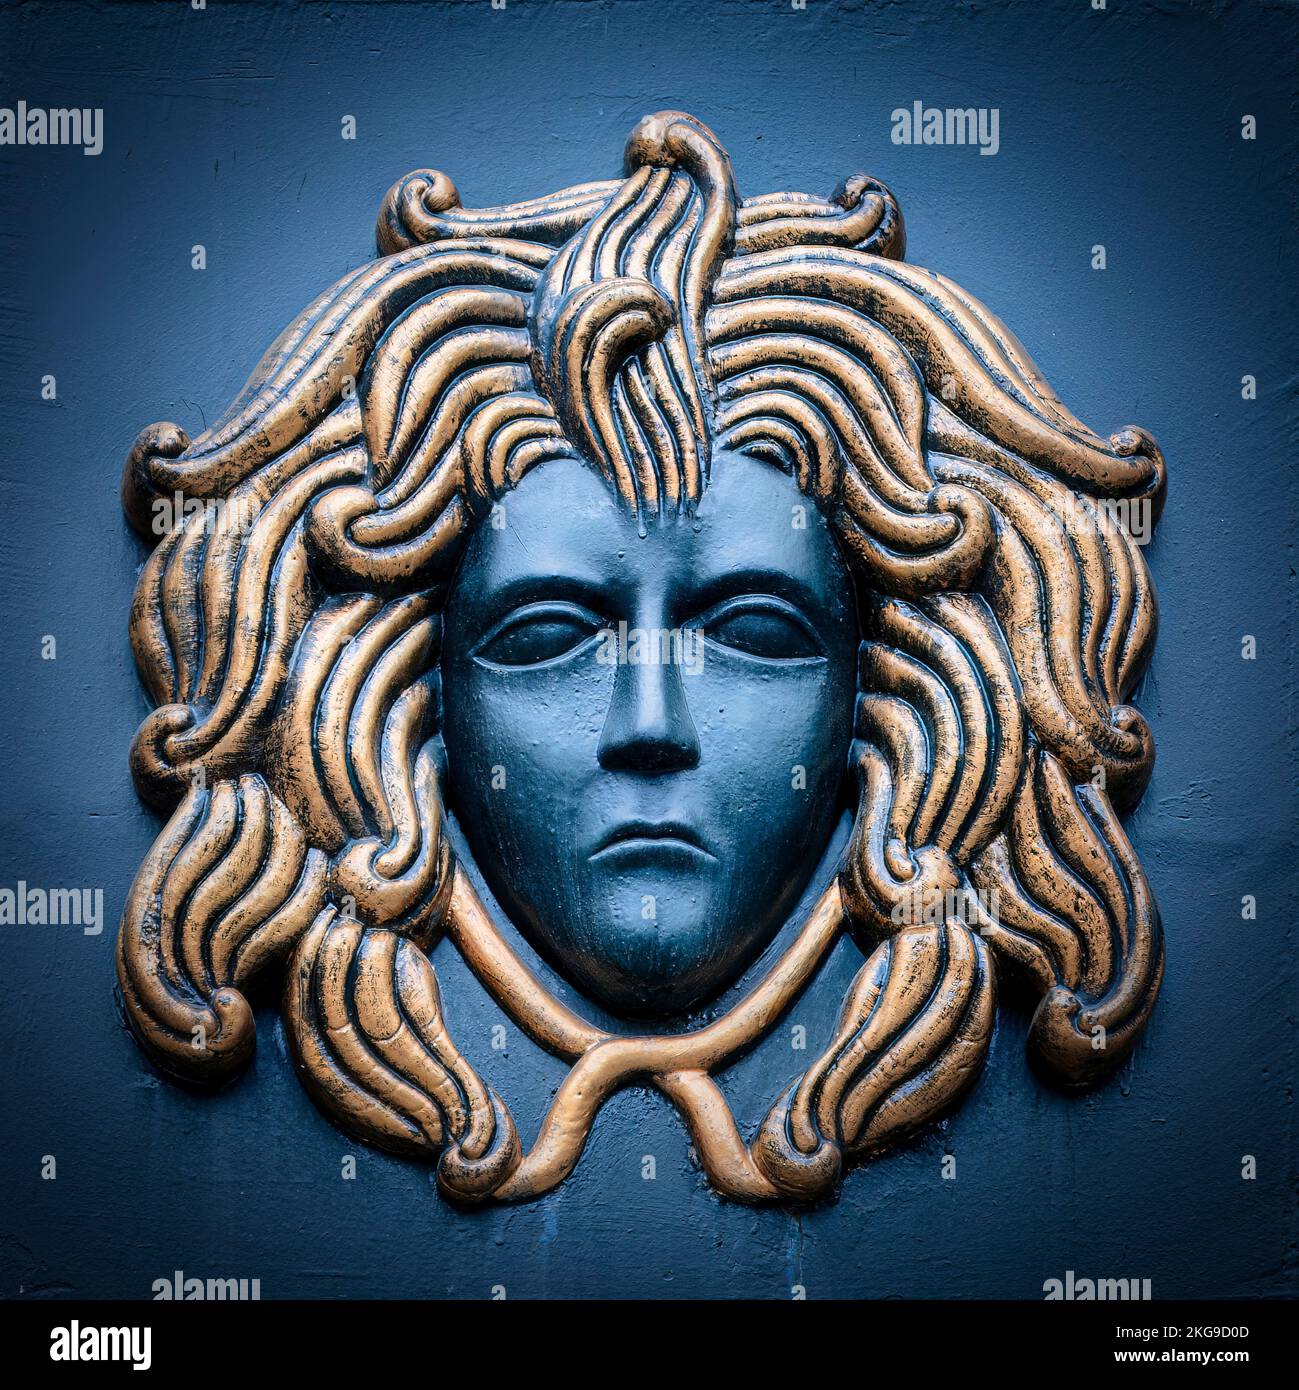 Une représentation classique de la tête de Medusa le Gorgon de la mythologie ancienne située à Instantbul, Turquie. Banque D'Images